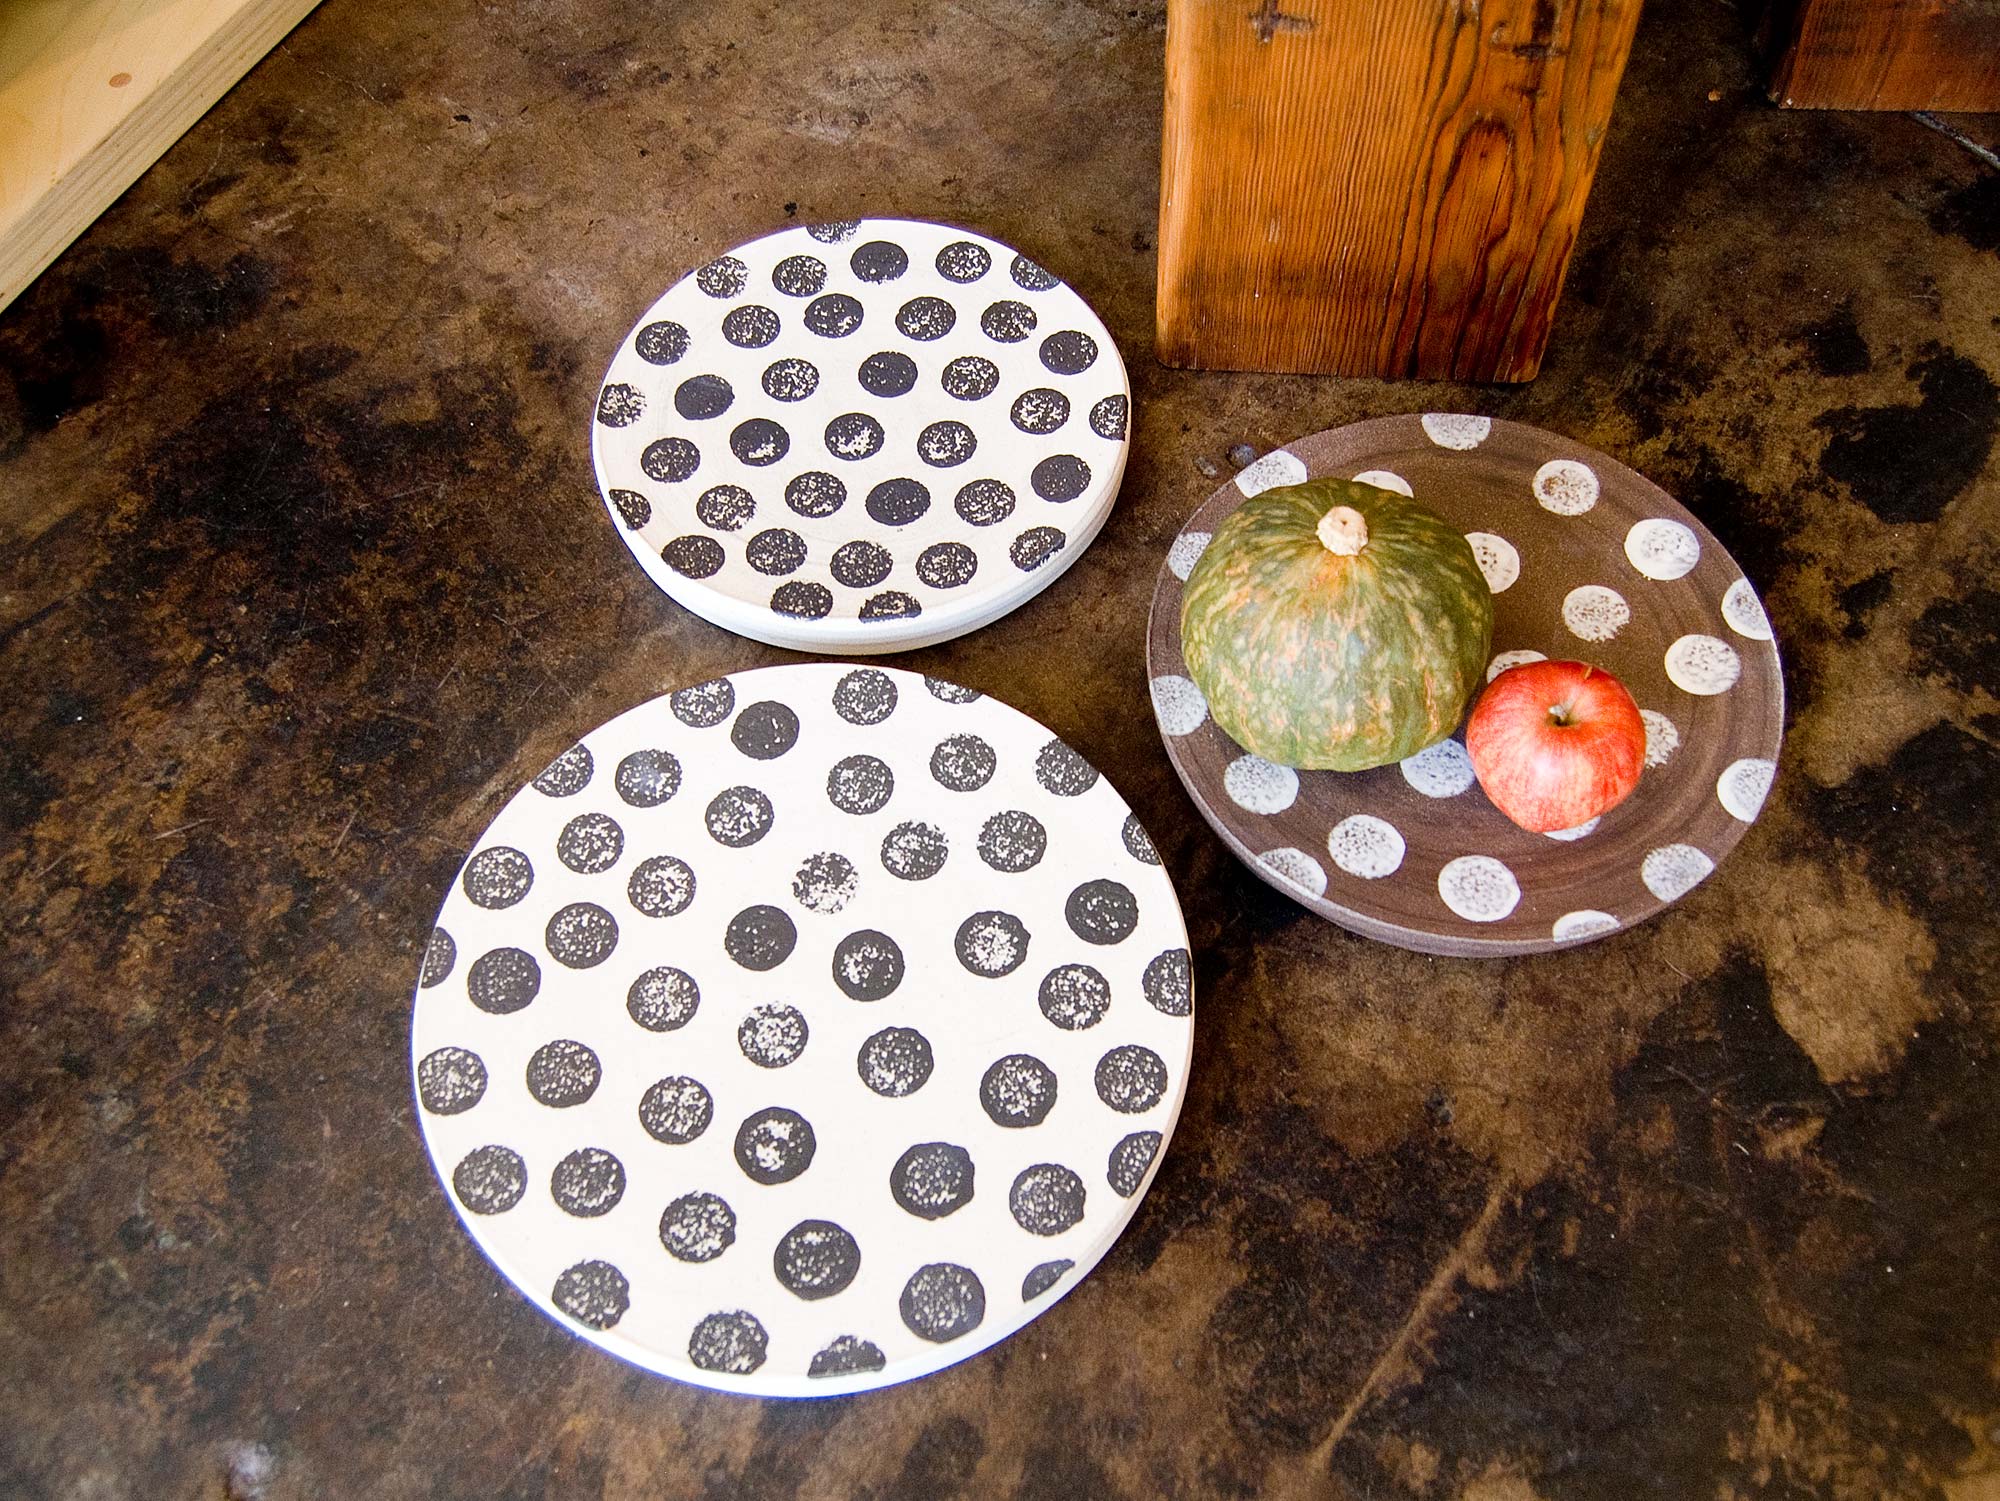  Spotware plates at Iko Iko, Los Angeles, 2011 